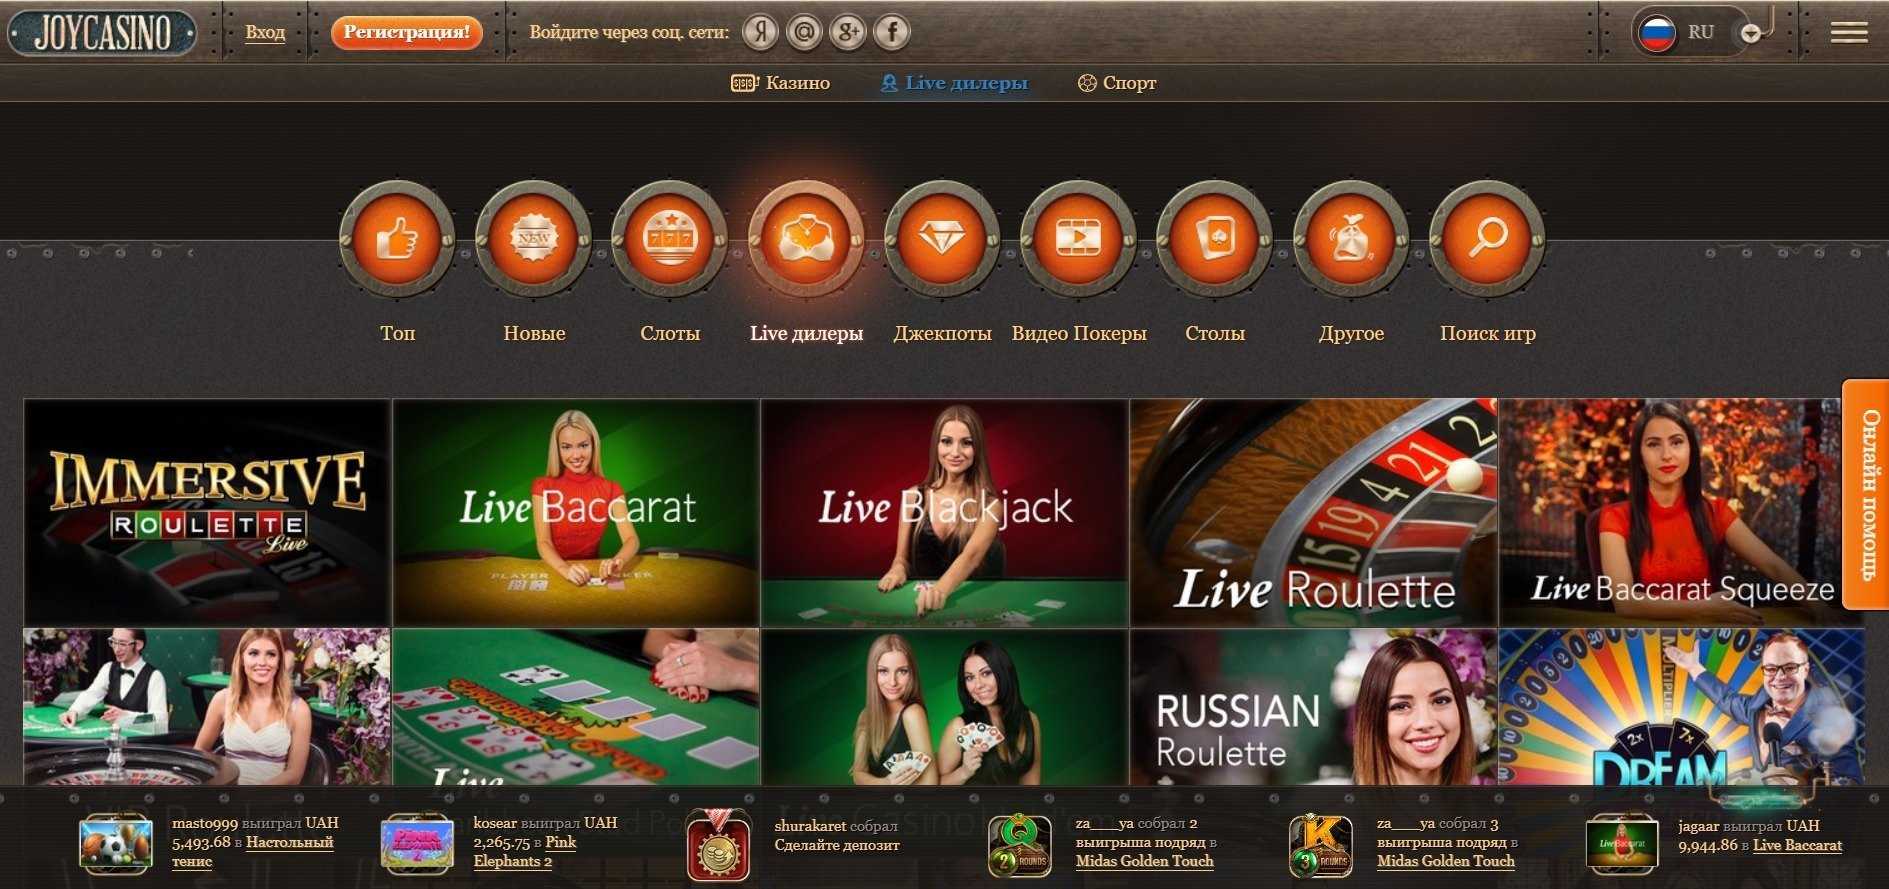 Joycasino рабочее зеркало joy casino pp ru. Джой казино зеркало. Провайдеры казино с лучшей отдачей. Joycasino зеркало на сегодня.